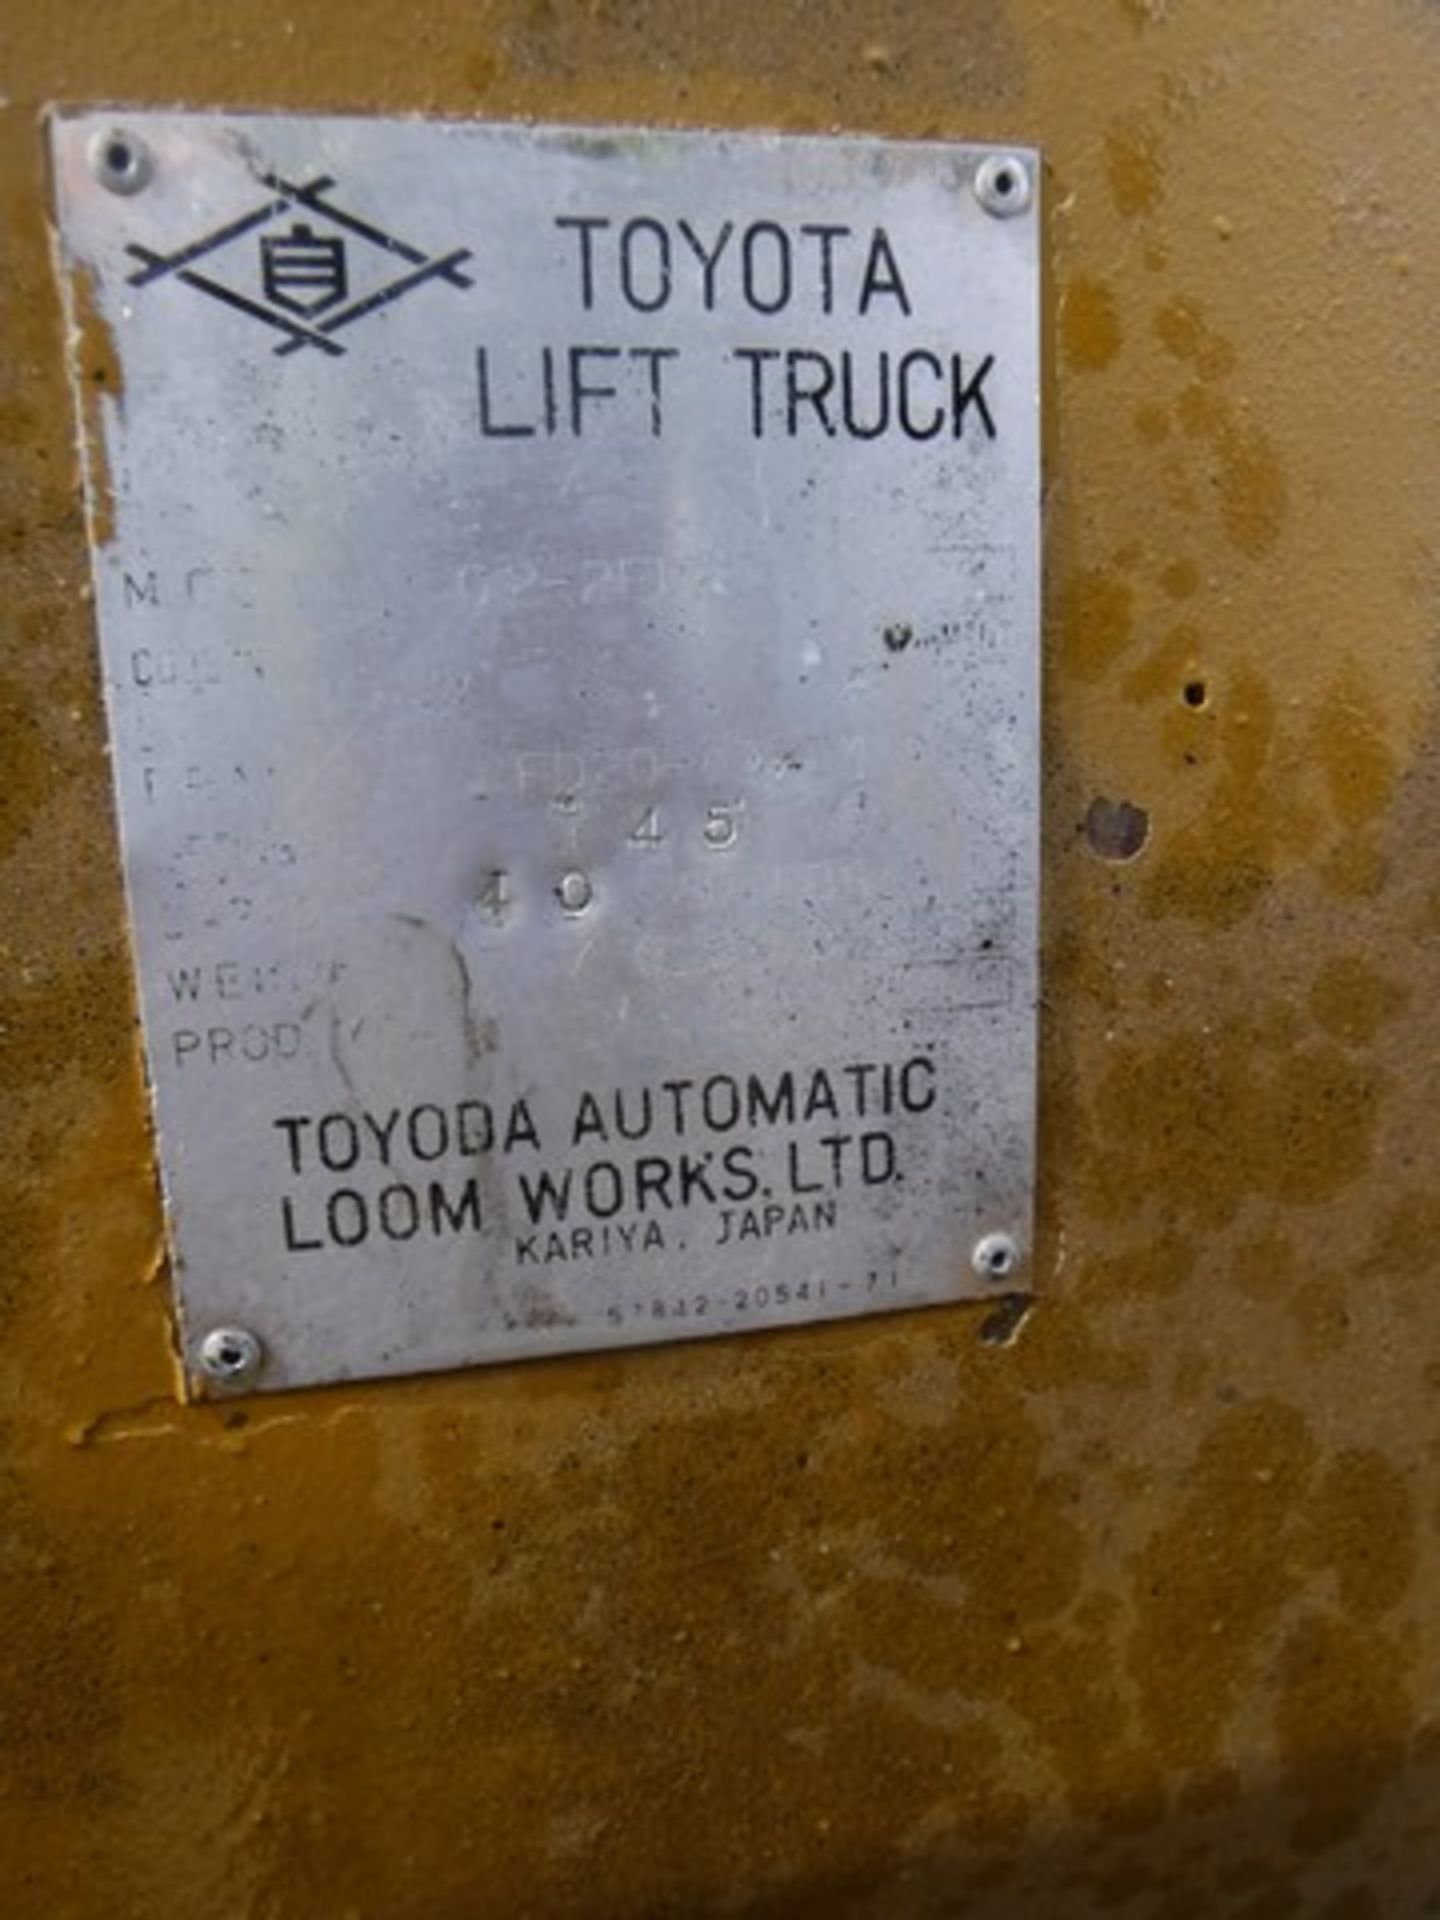 TOYOTA diesel forklift, 285hrs (not verified) - Bild 3 aus 12